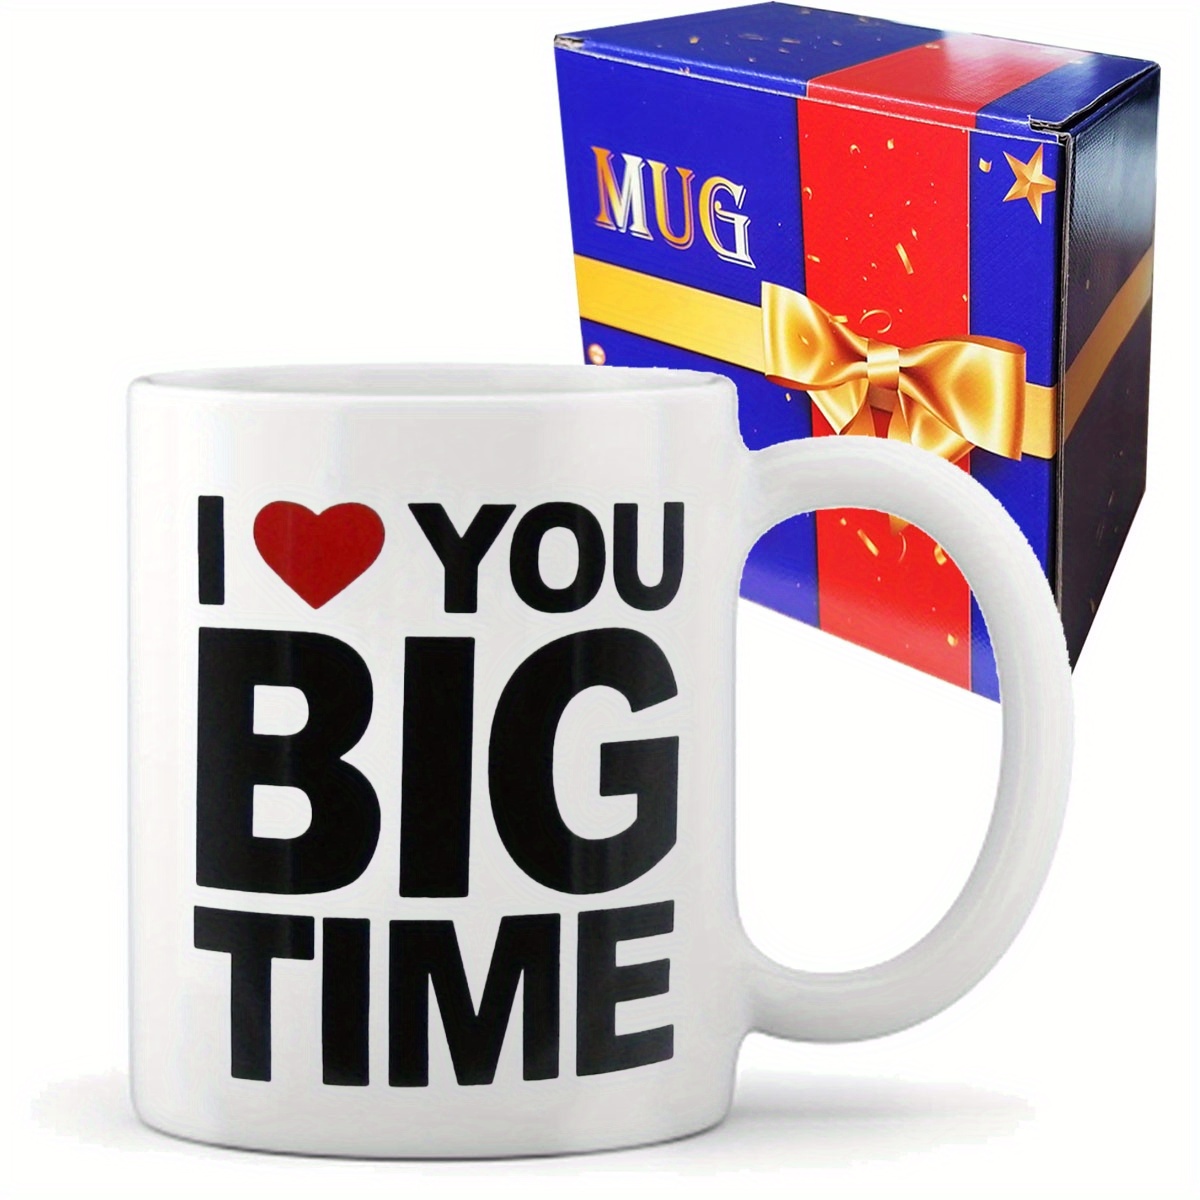 Oversized Mugs: Large & Extra-Large Mugs for Coffee